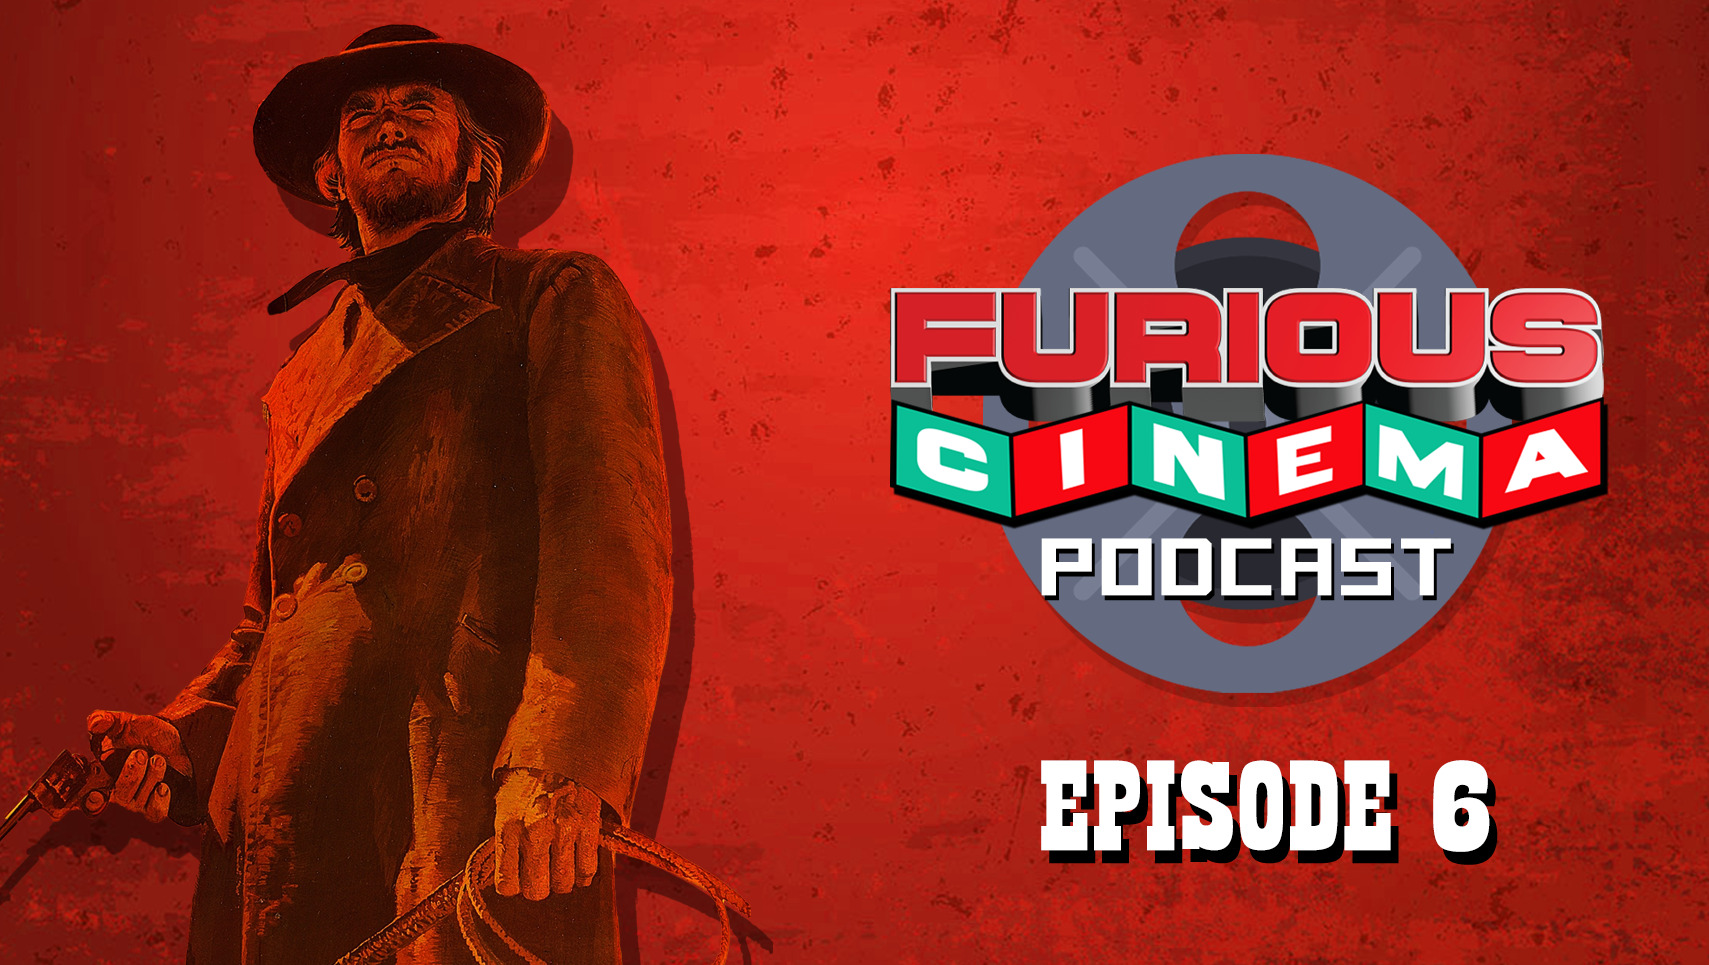 Furious Cinema Podcast episode 6